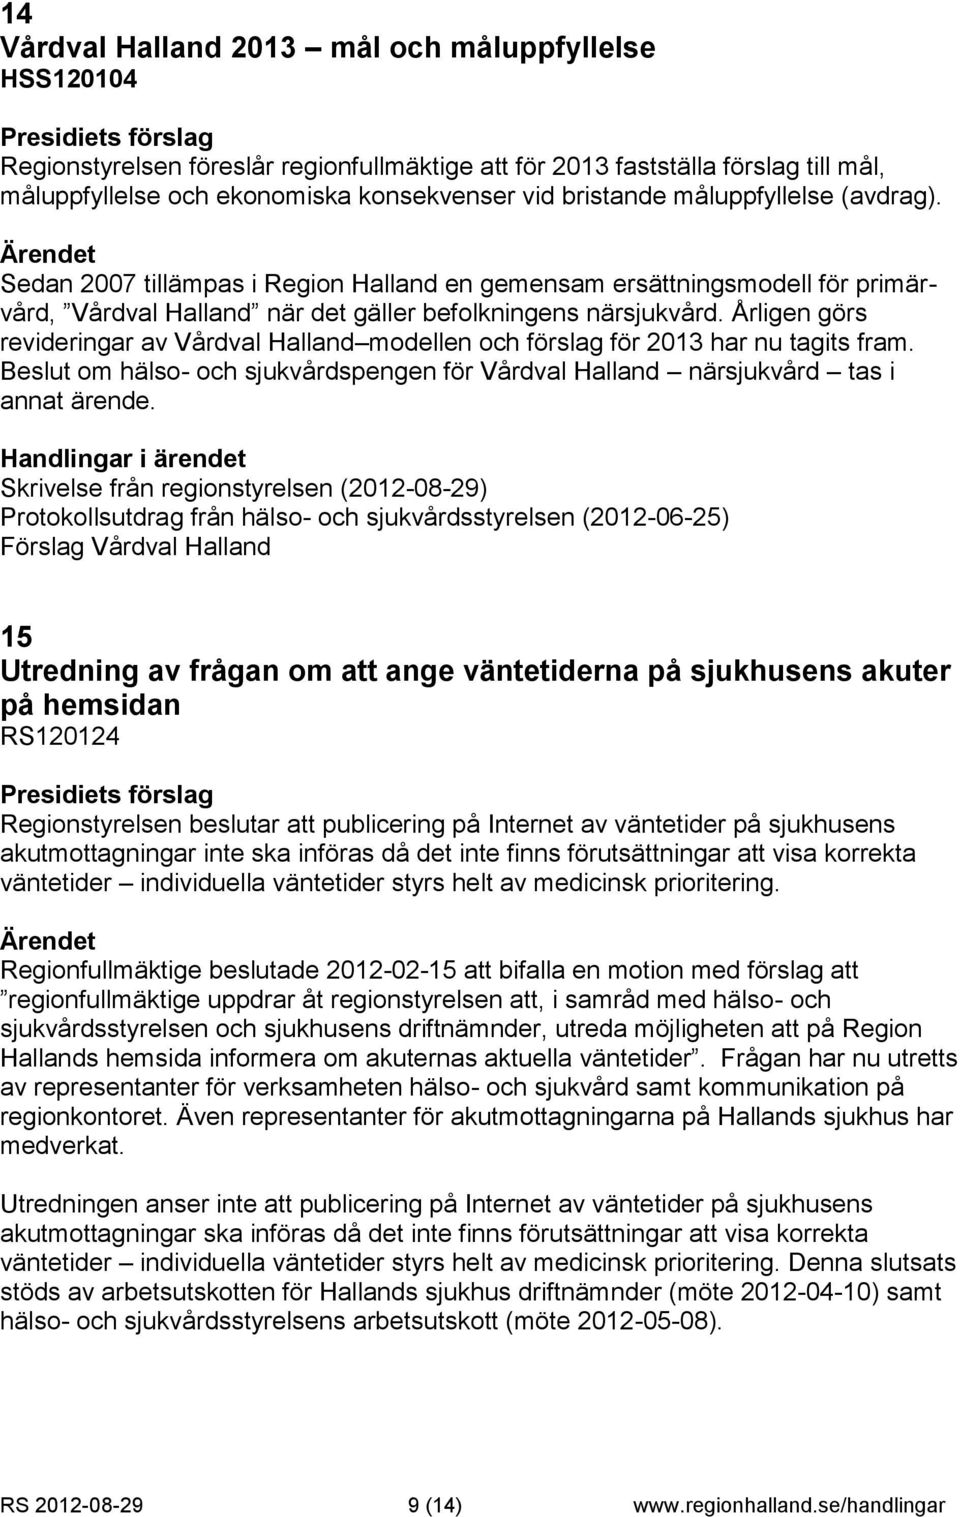 Årligen görs revideringar av Vårdval Halland modellen och förslag för 2013 har nu tagits fram. Beslut om hälso- och sjukvårdspengen för Vårdval Halland närsjukvård tas i annat ärende.